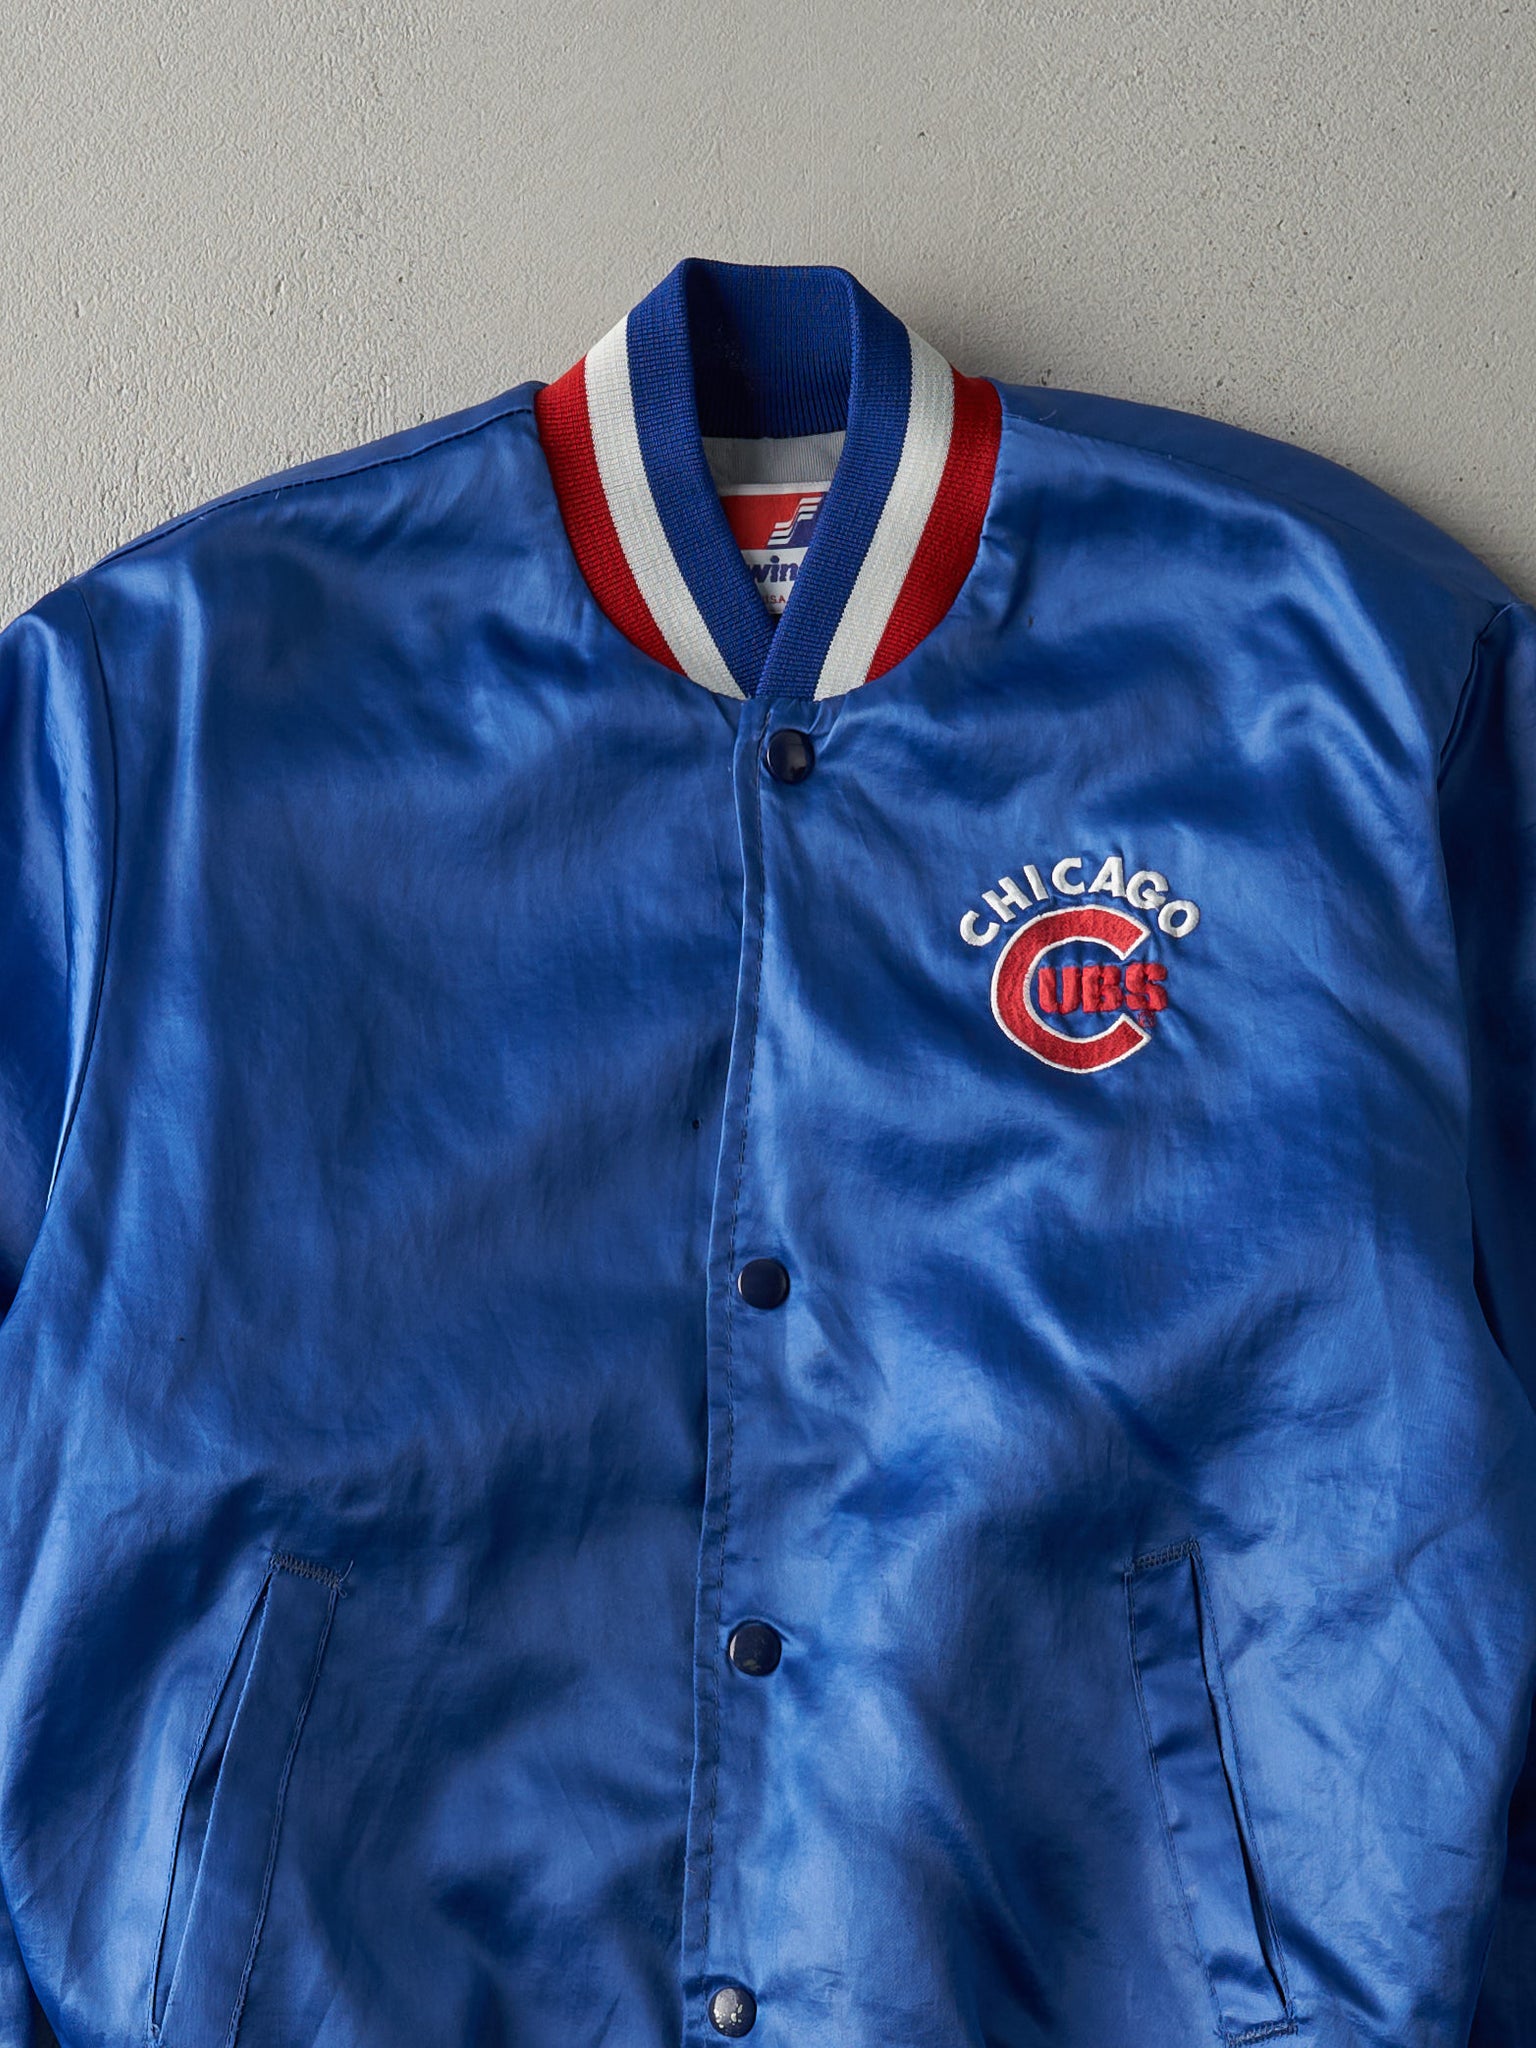 Vintage 80s Blue Chicago Cubs Satin Bomber Jacket (S)